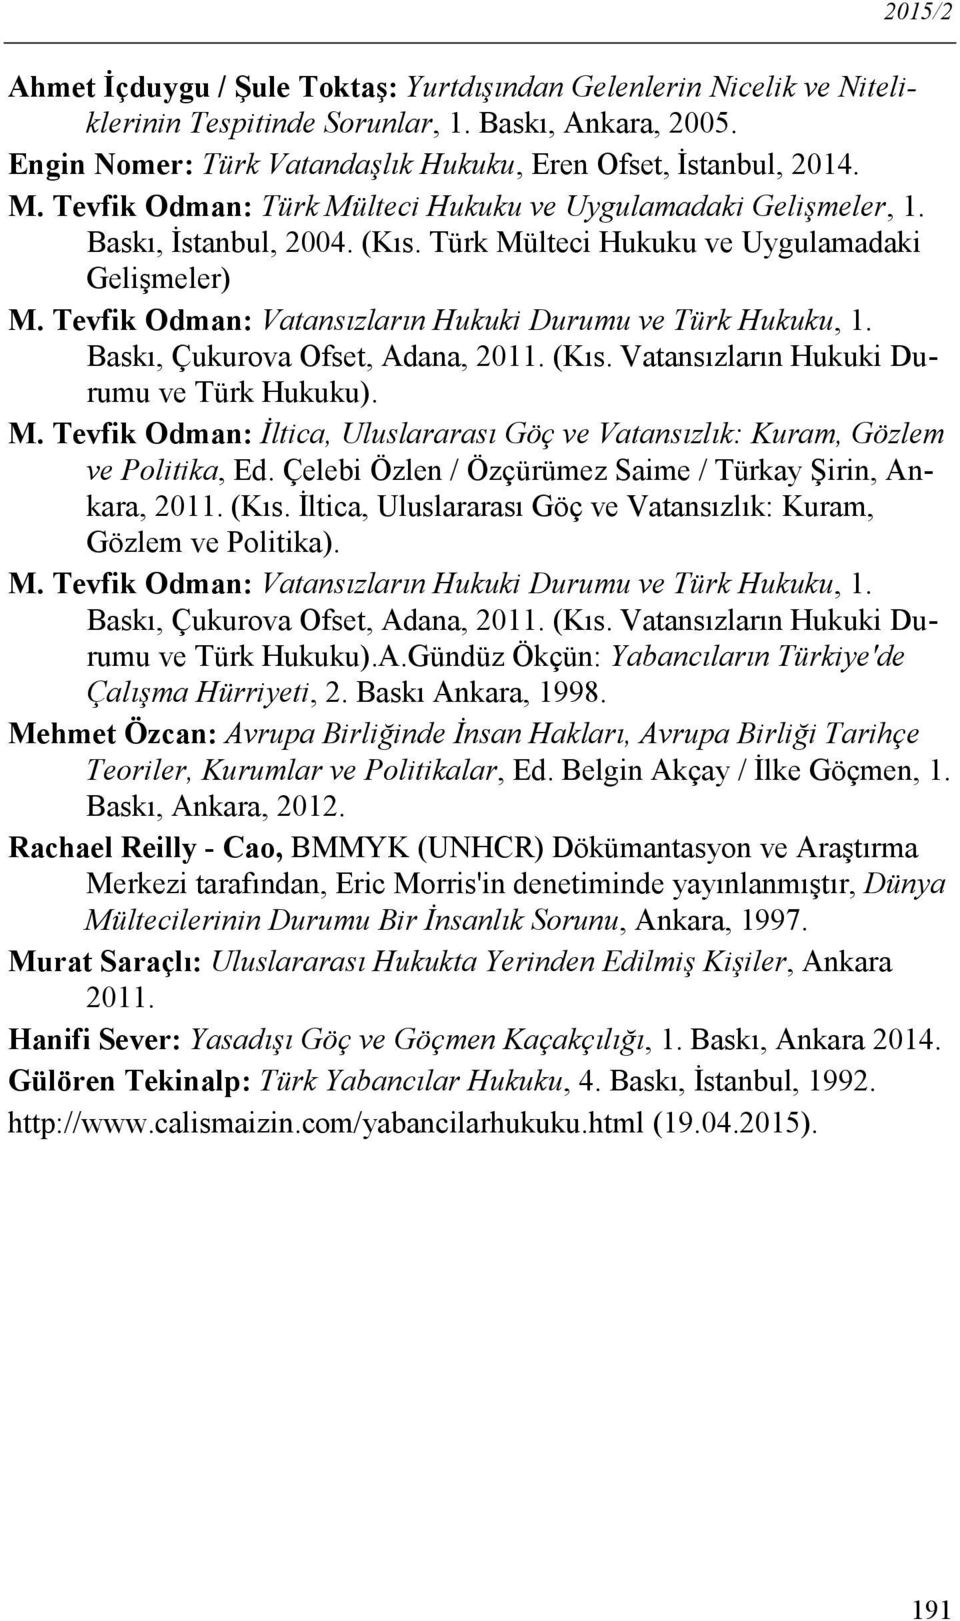 Tevfik Odman: Vatansızların Hukuki Durumu ve Türk Hukuku, 1. Baskı, Çukurova Ofset, Adana, 2011. (Kıs. Vatansızların Hukuki Durumu ve Türk Hukuku). M.